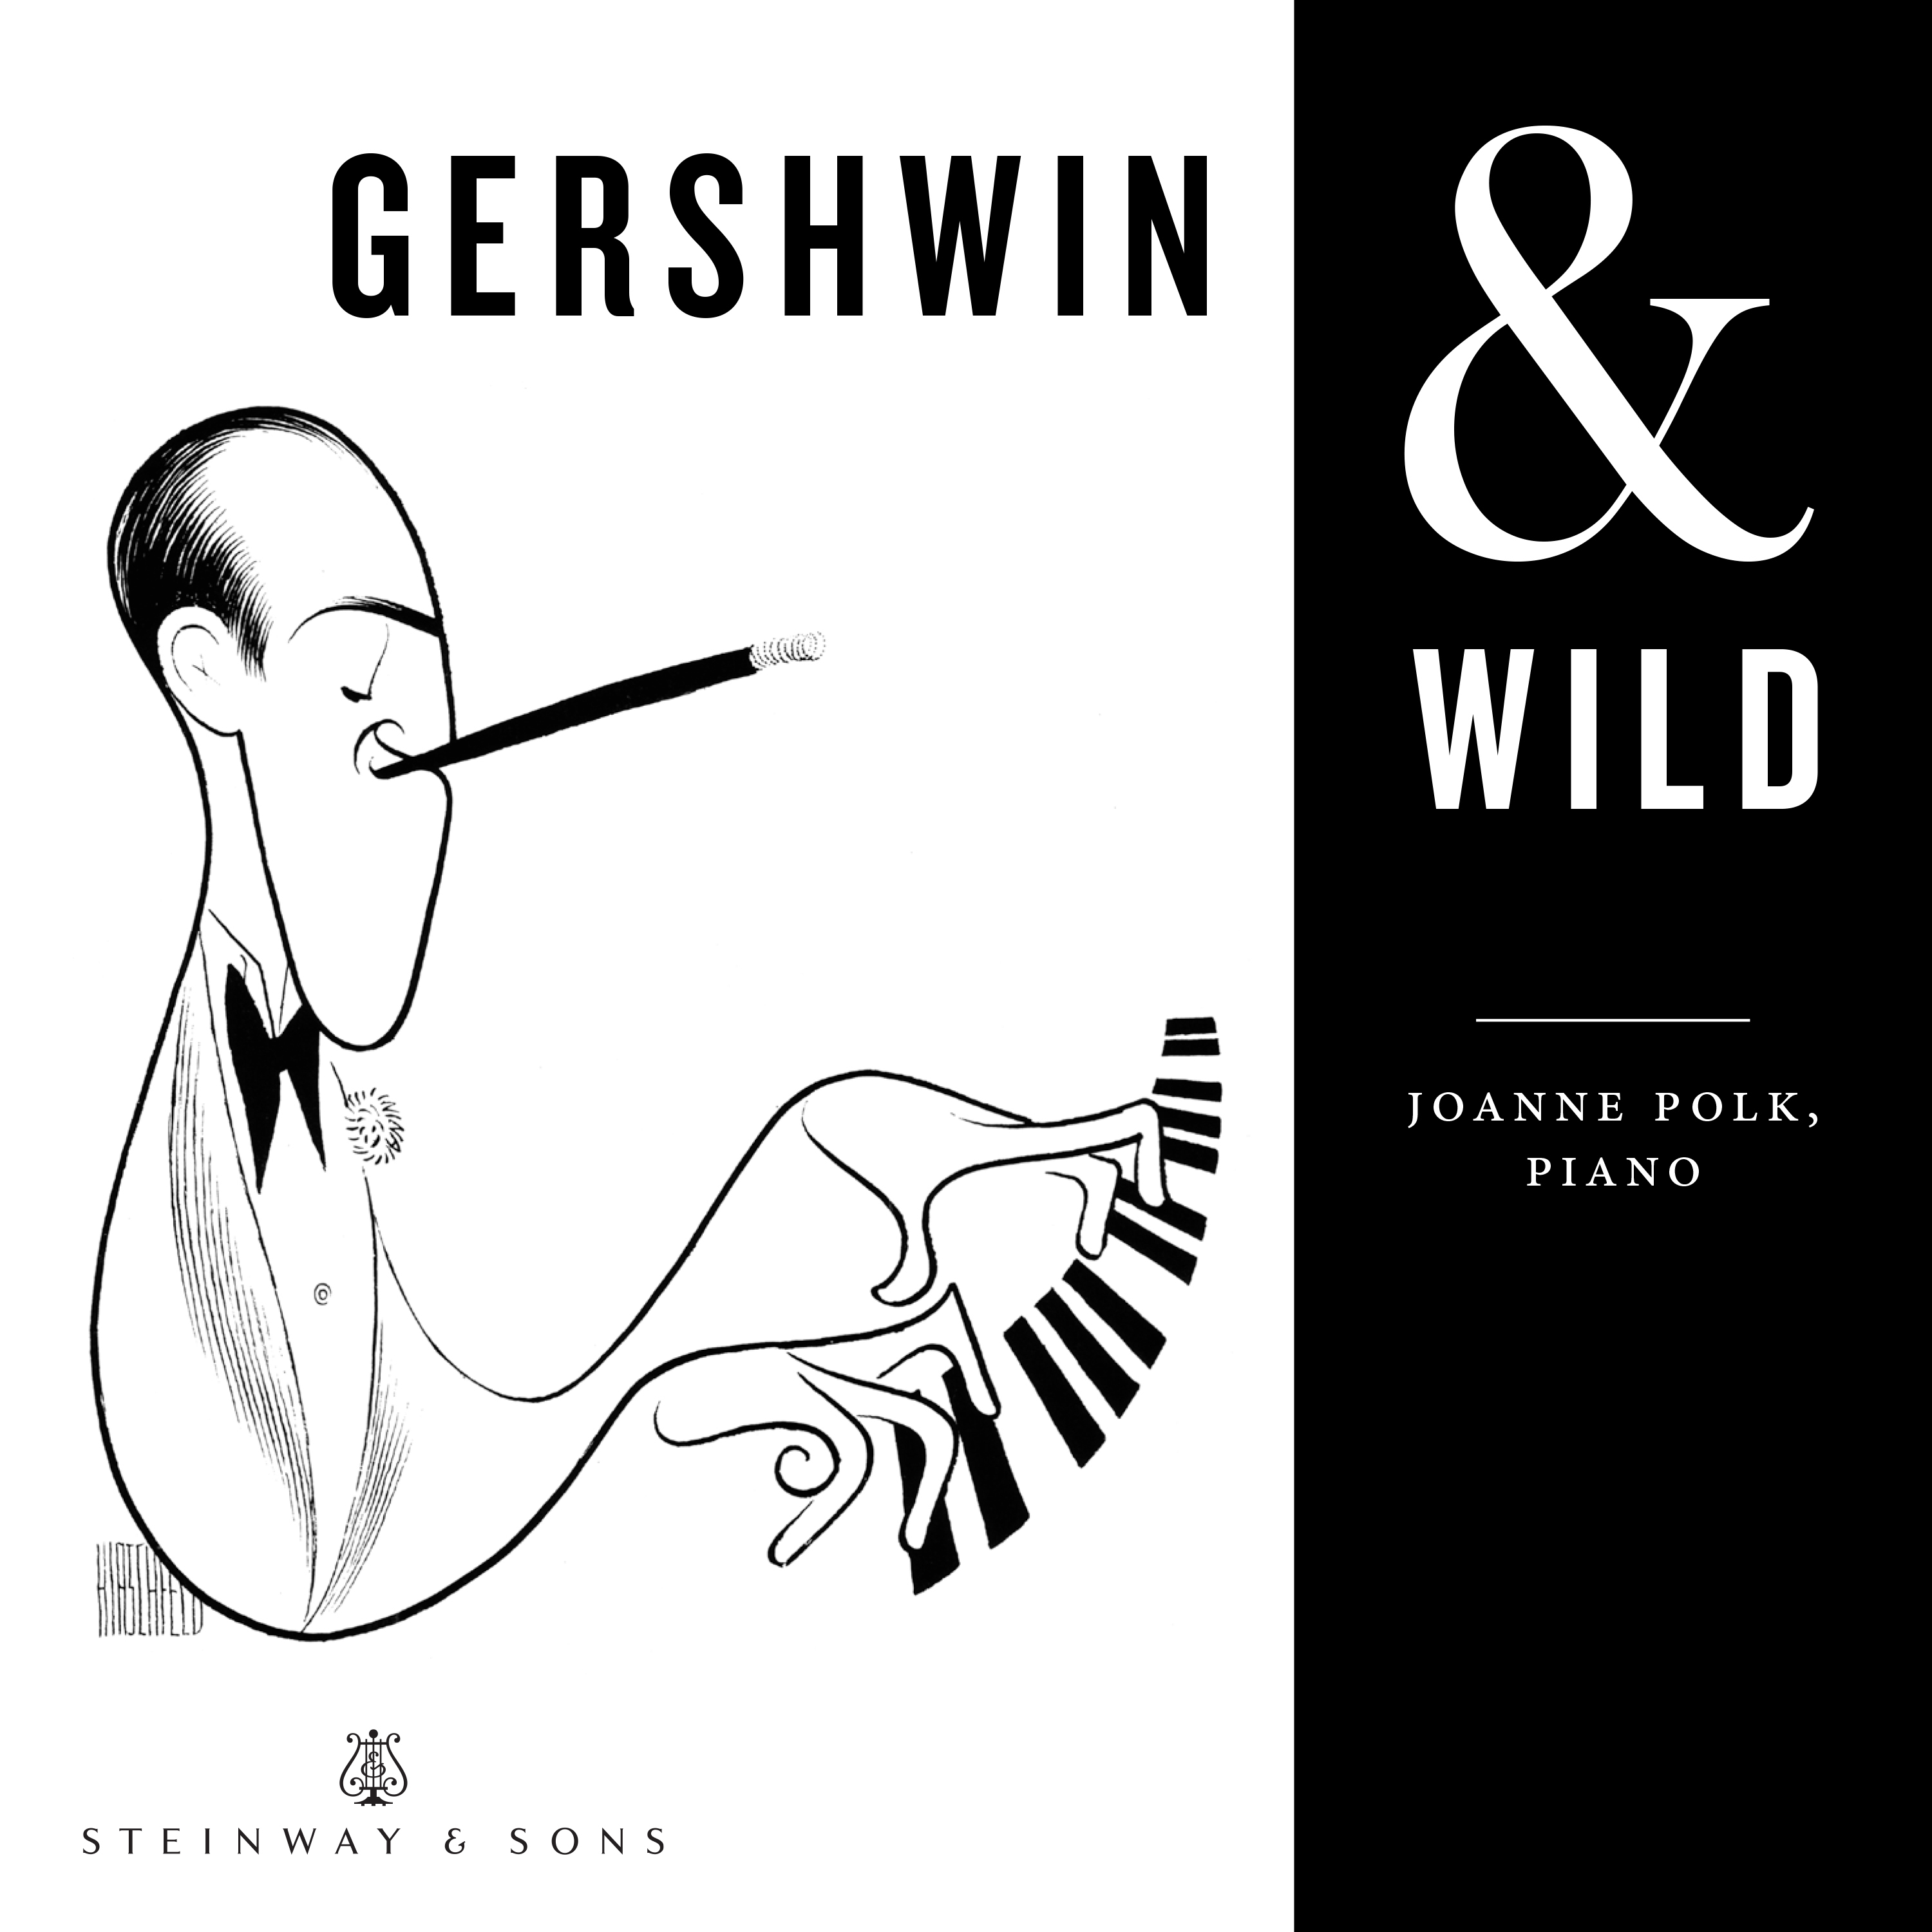 Gershwin & Wild / Joanne Polk